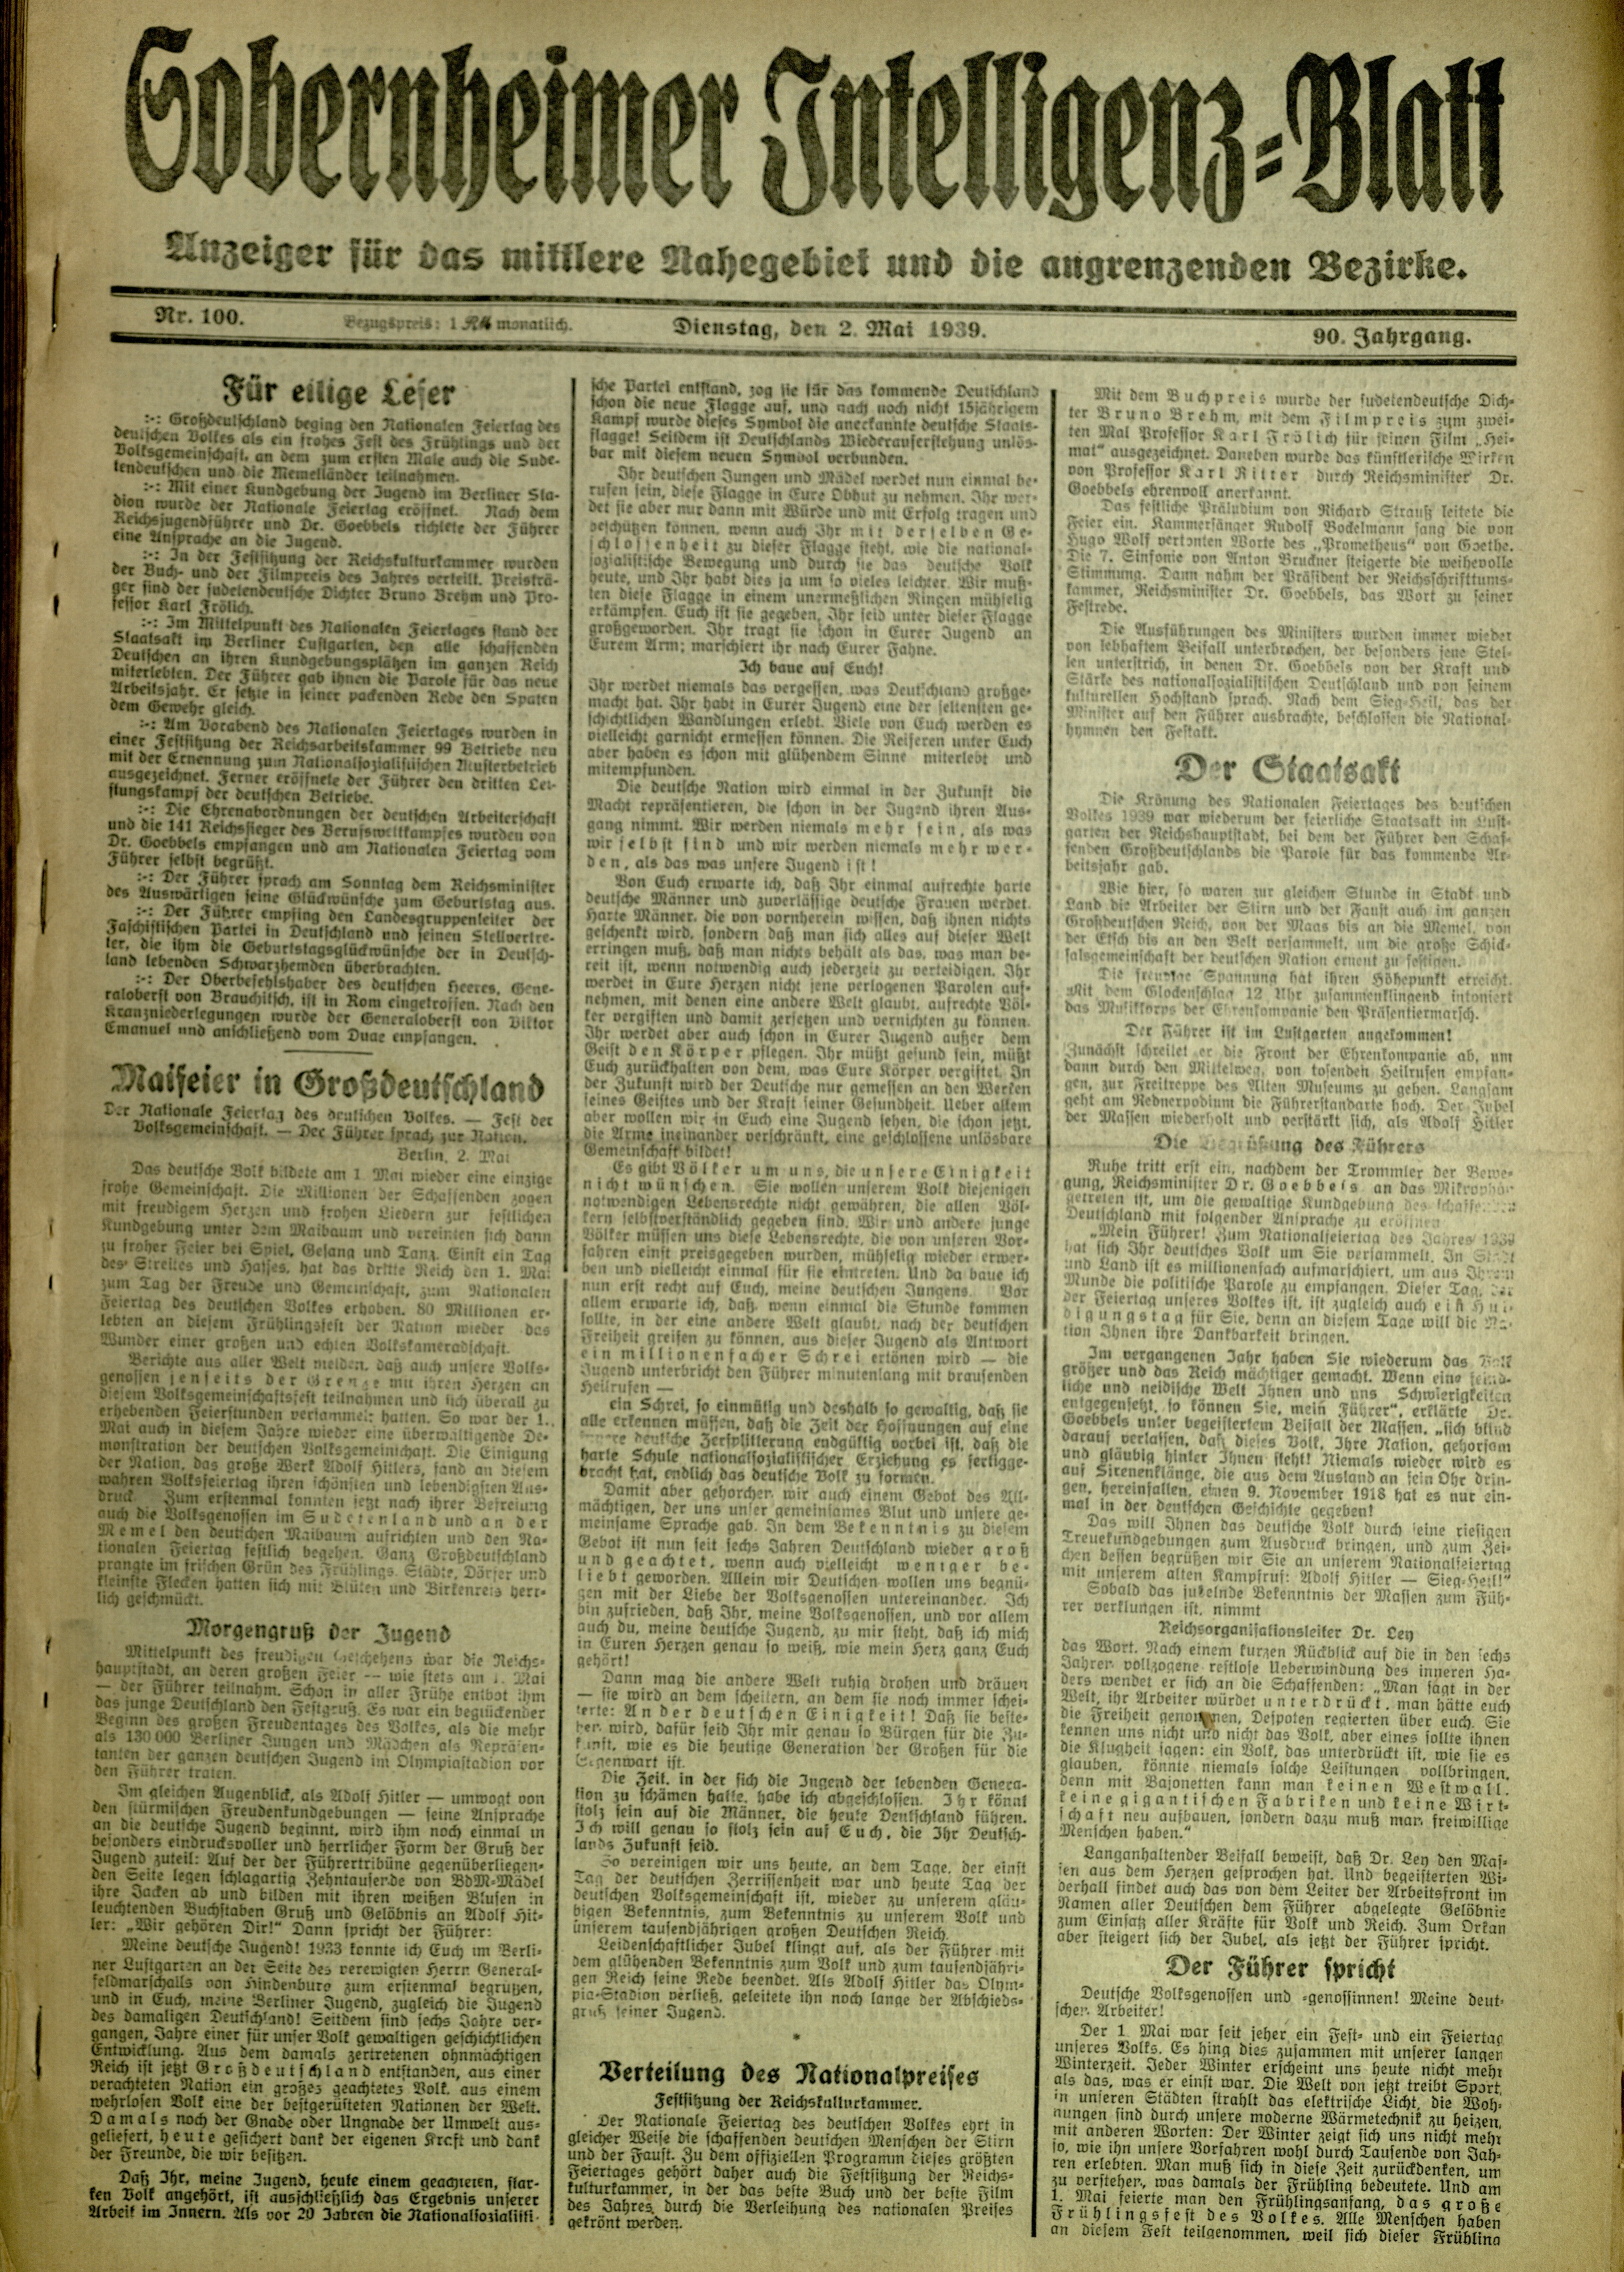 Zeitung: Sobernheimer Intelligenzblatt; Mai 1939, Jg. 90 Nr. 100 (Heimatmuseum Bad Sobernheim CC BY-NC-SA)